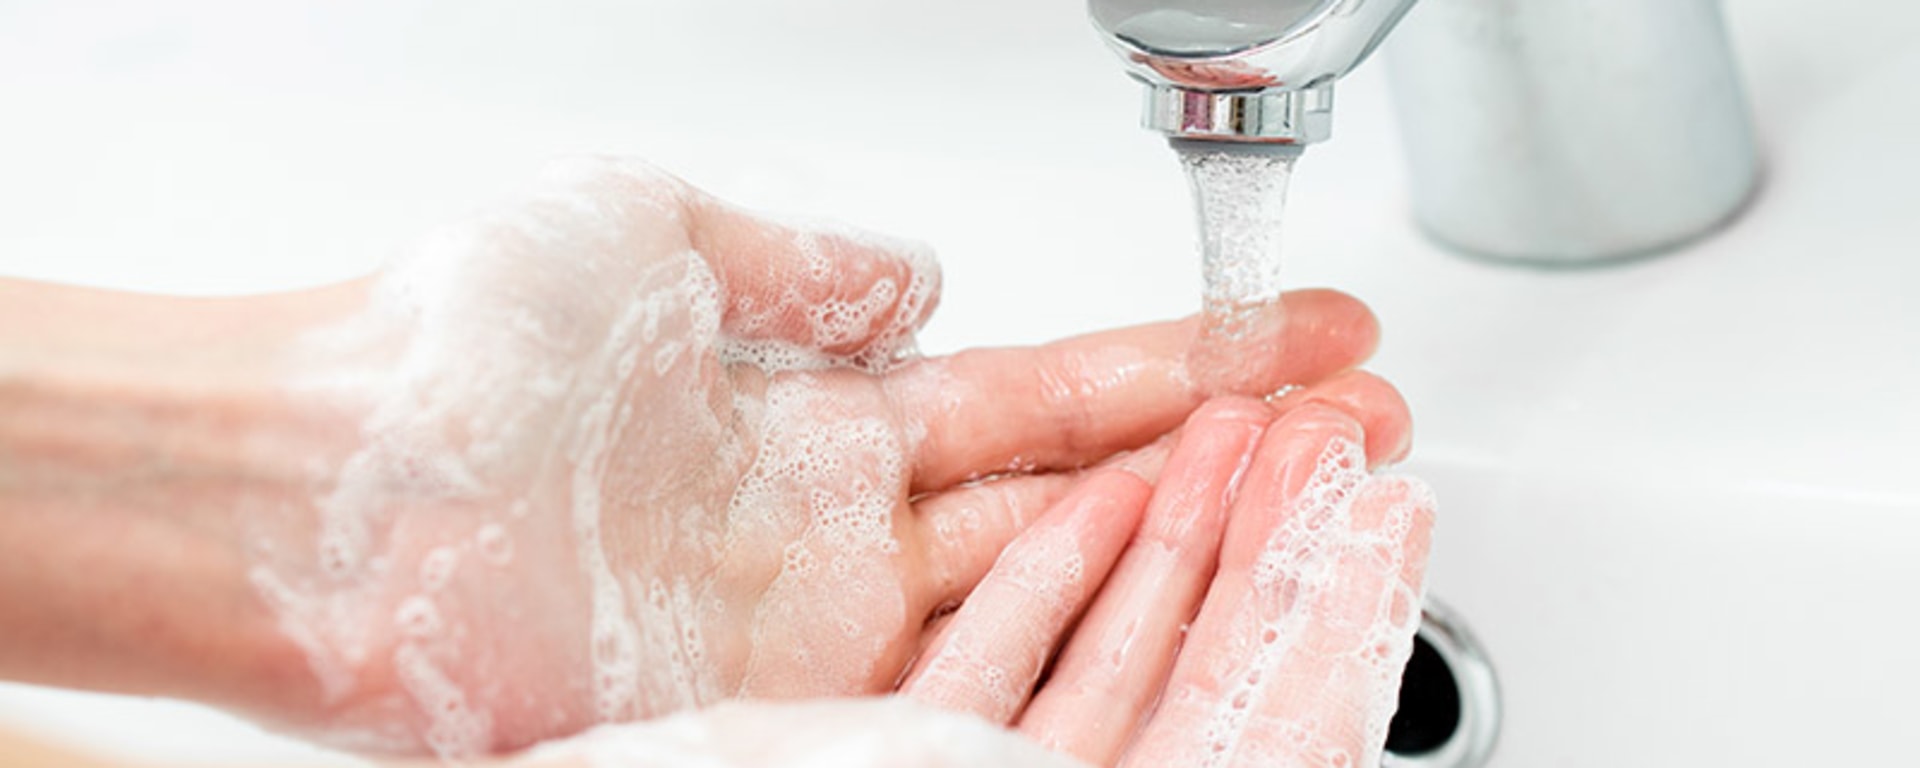 Eine Person wäscht sich die Hände mit einer Seife, die Corona visrus symbolisiert.